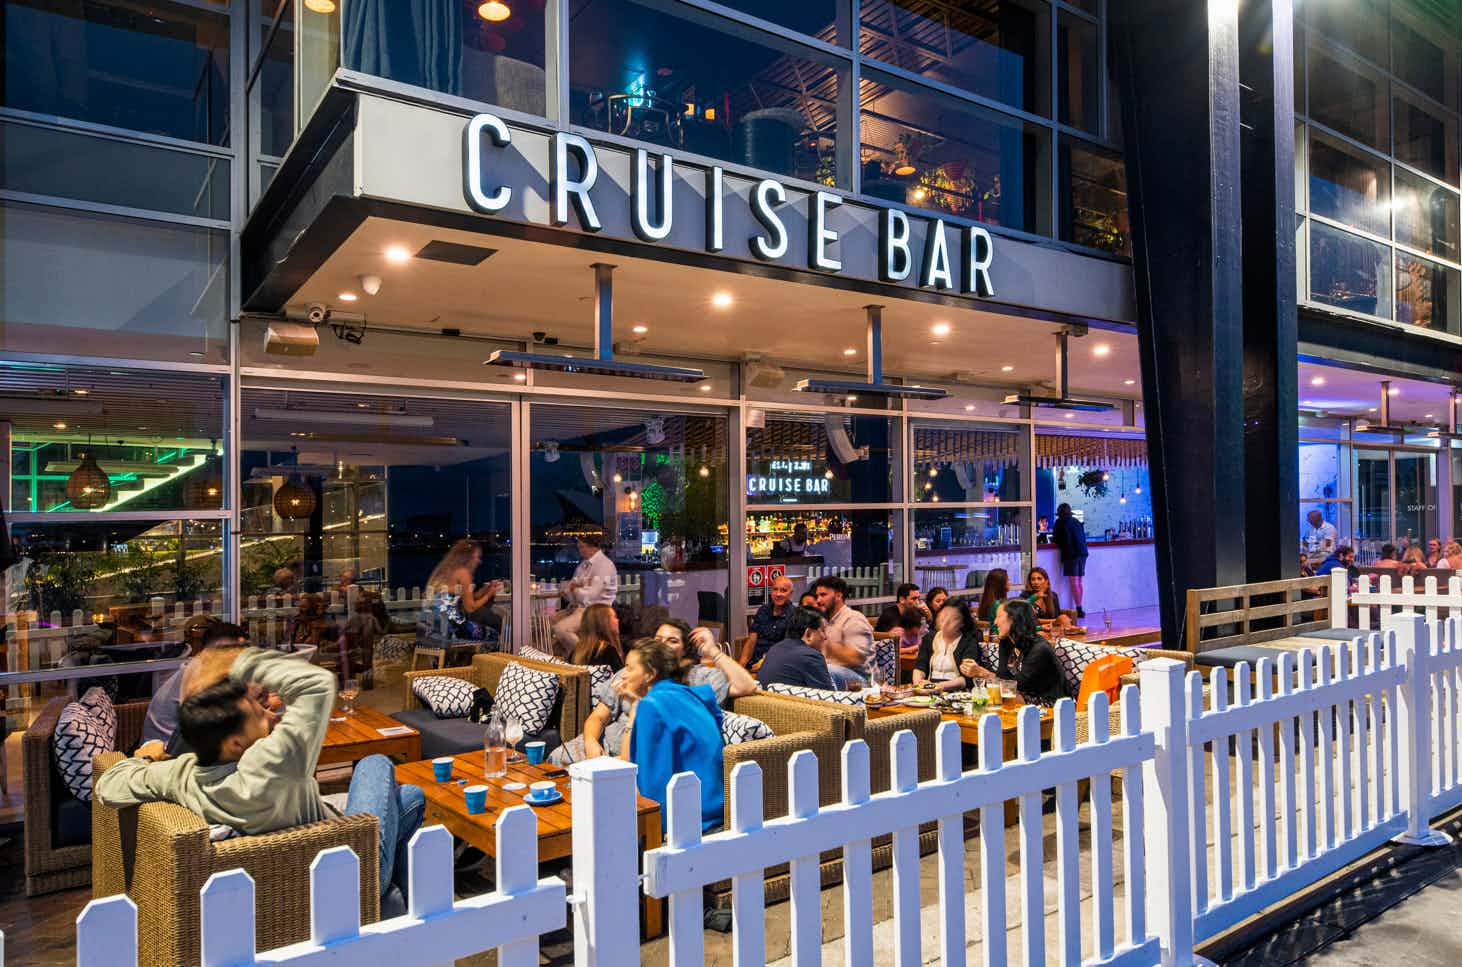 Level 1 Cruise Bar - The Wharfside, Cruise Bar